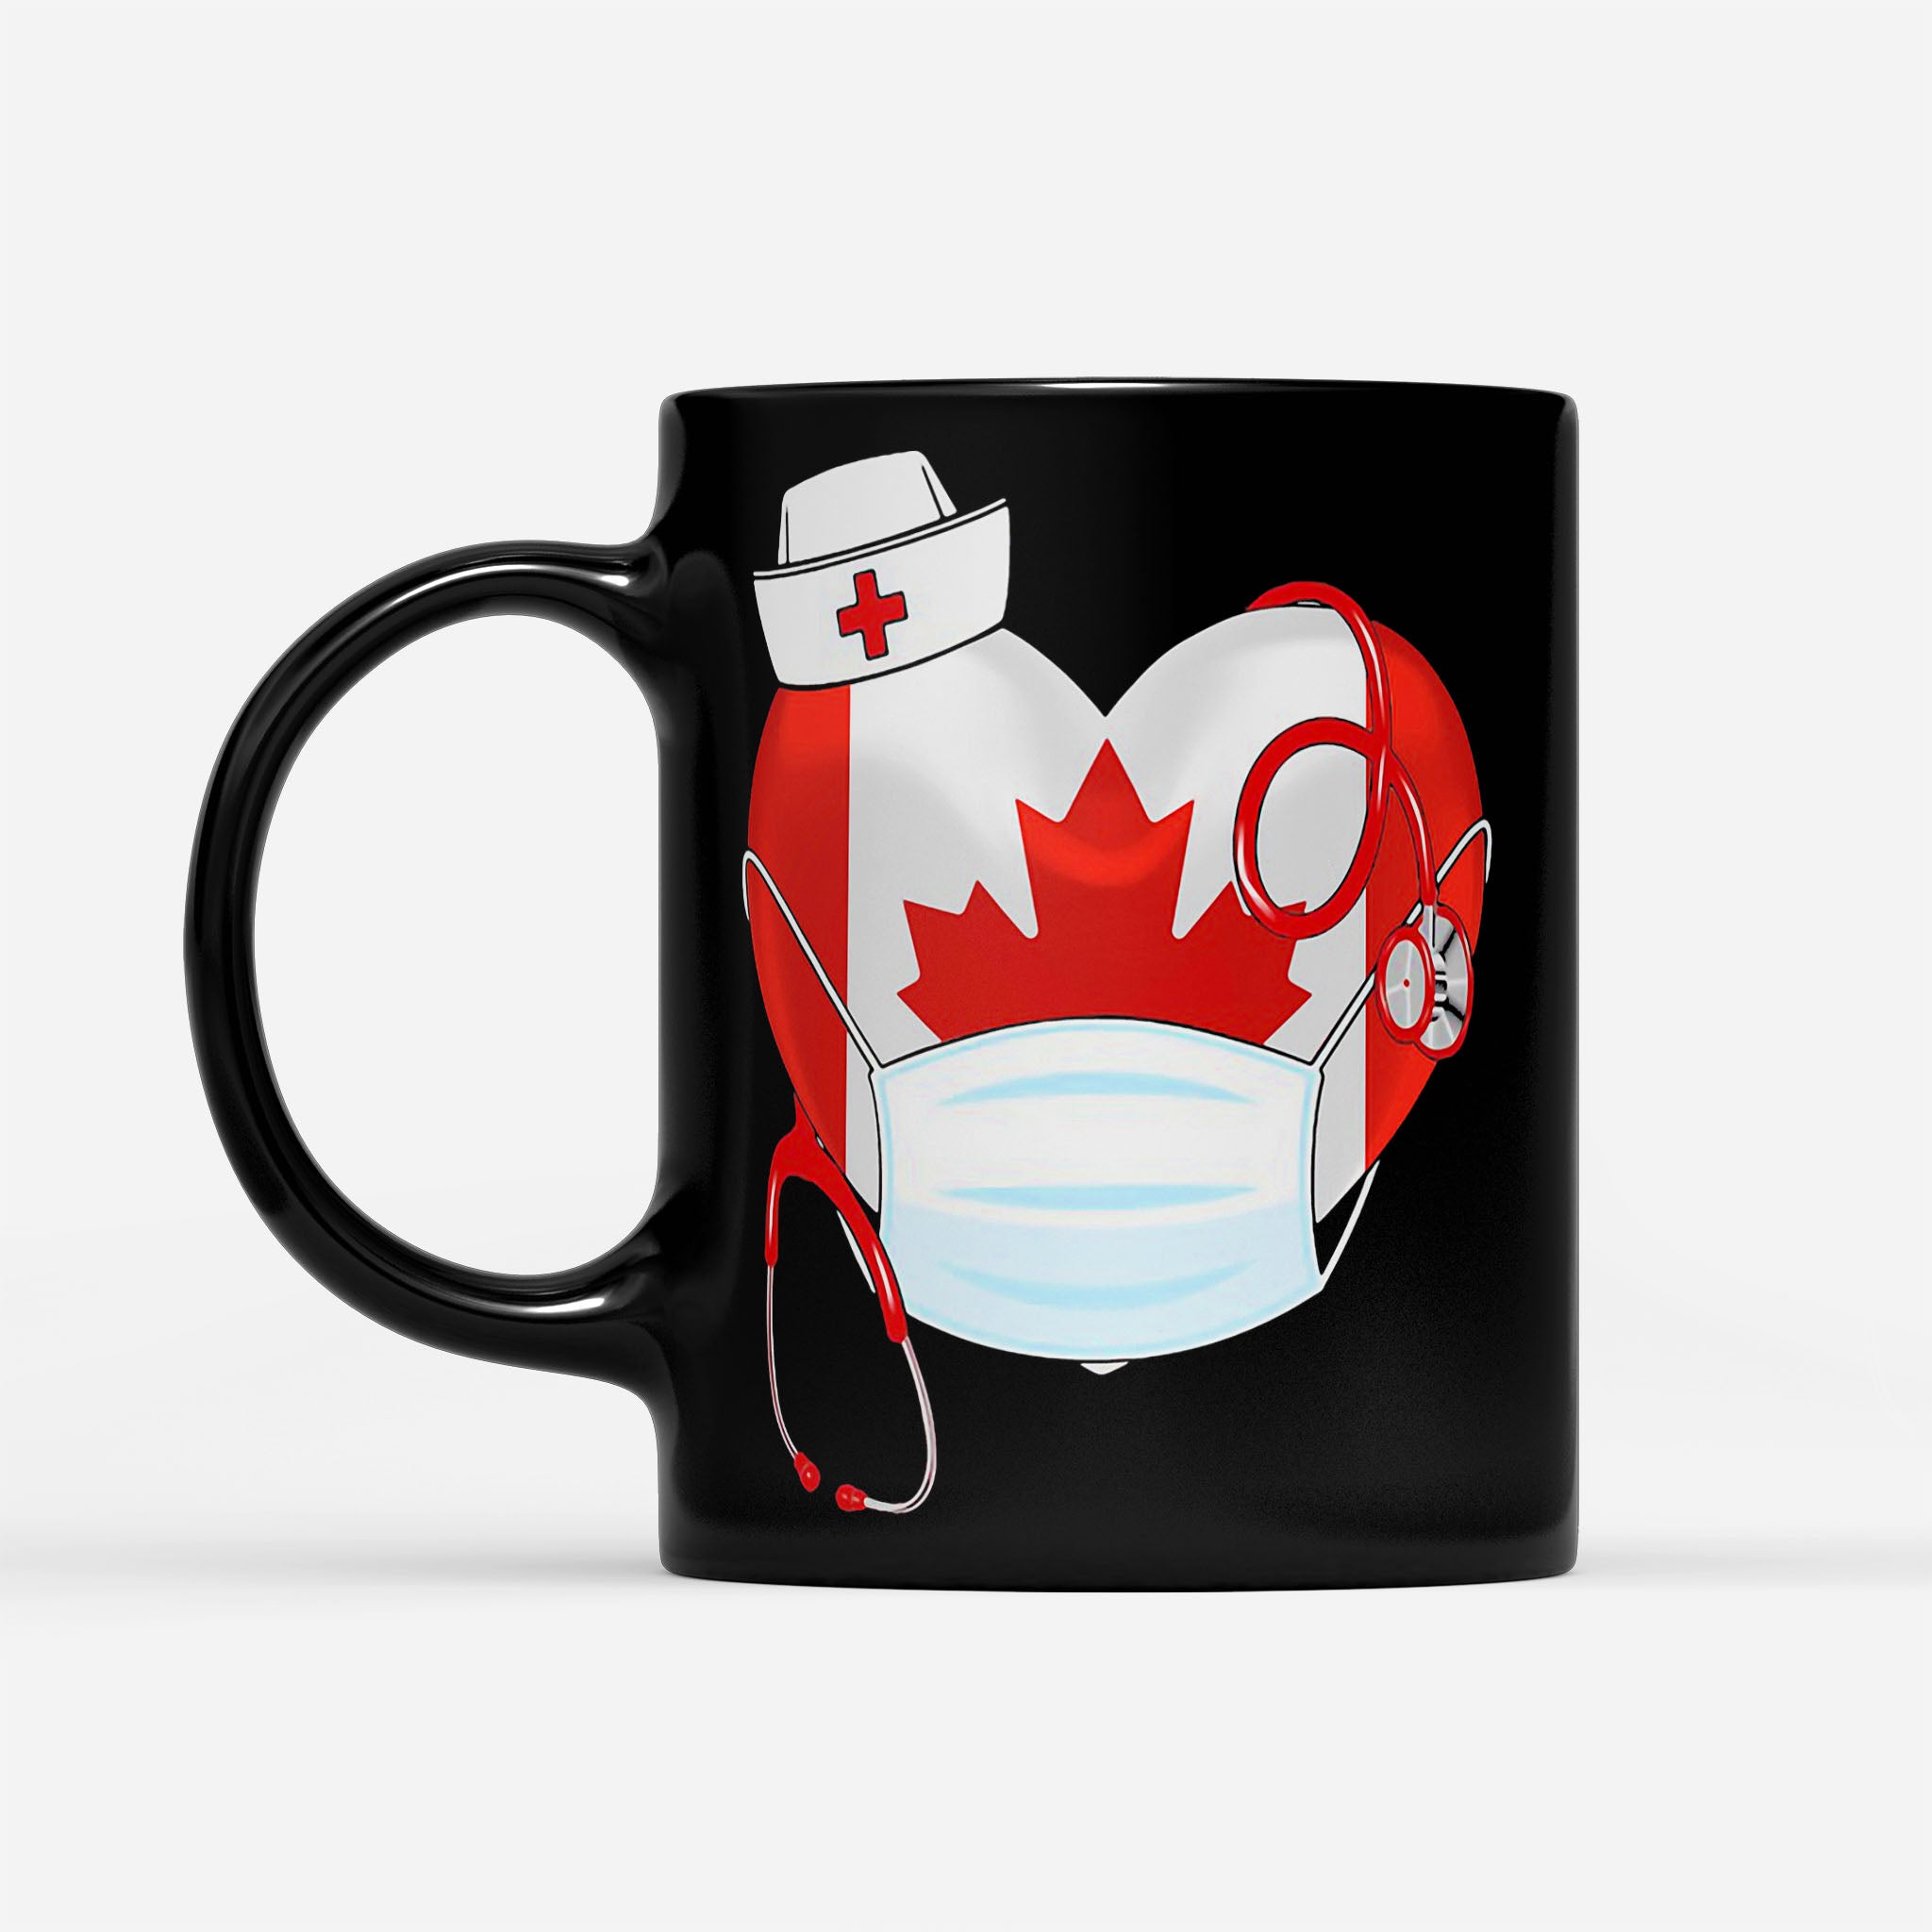 Stethoscope Love Nurse Canadian 2020 Coronavirus - Black Mug